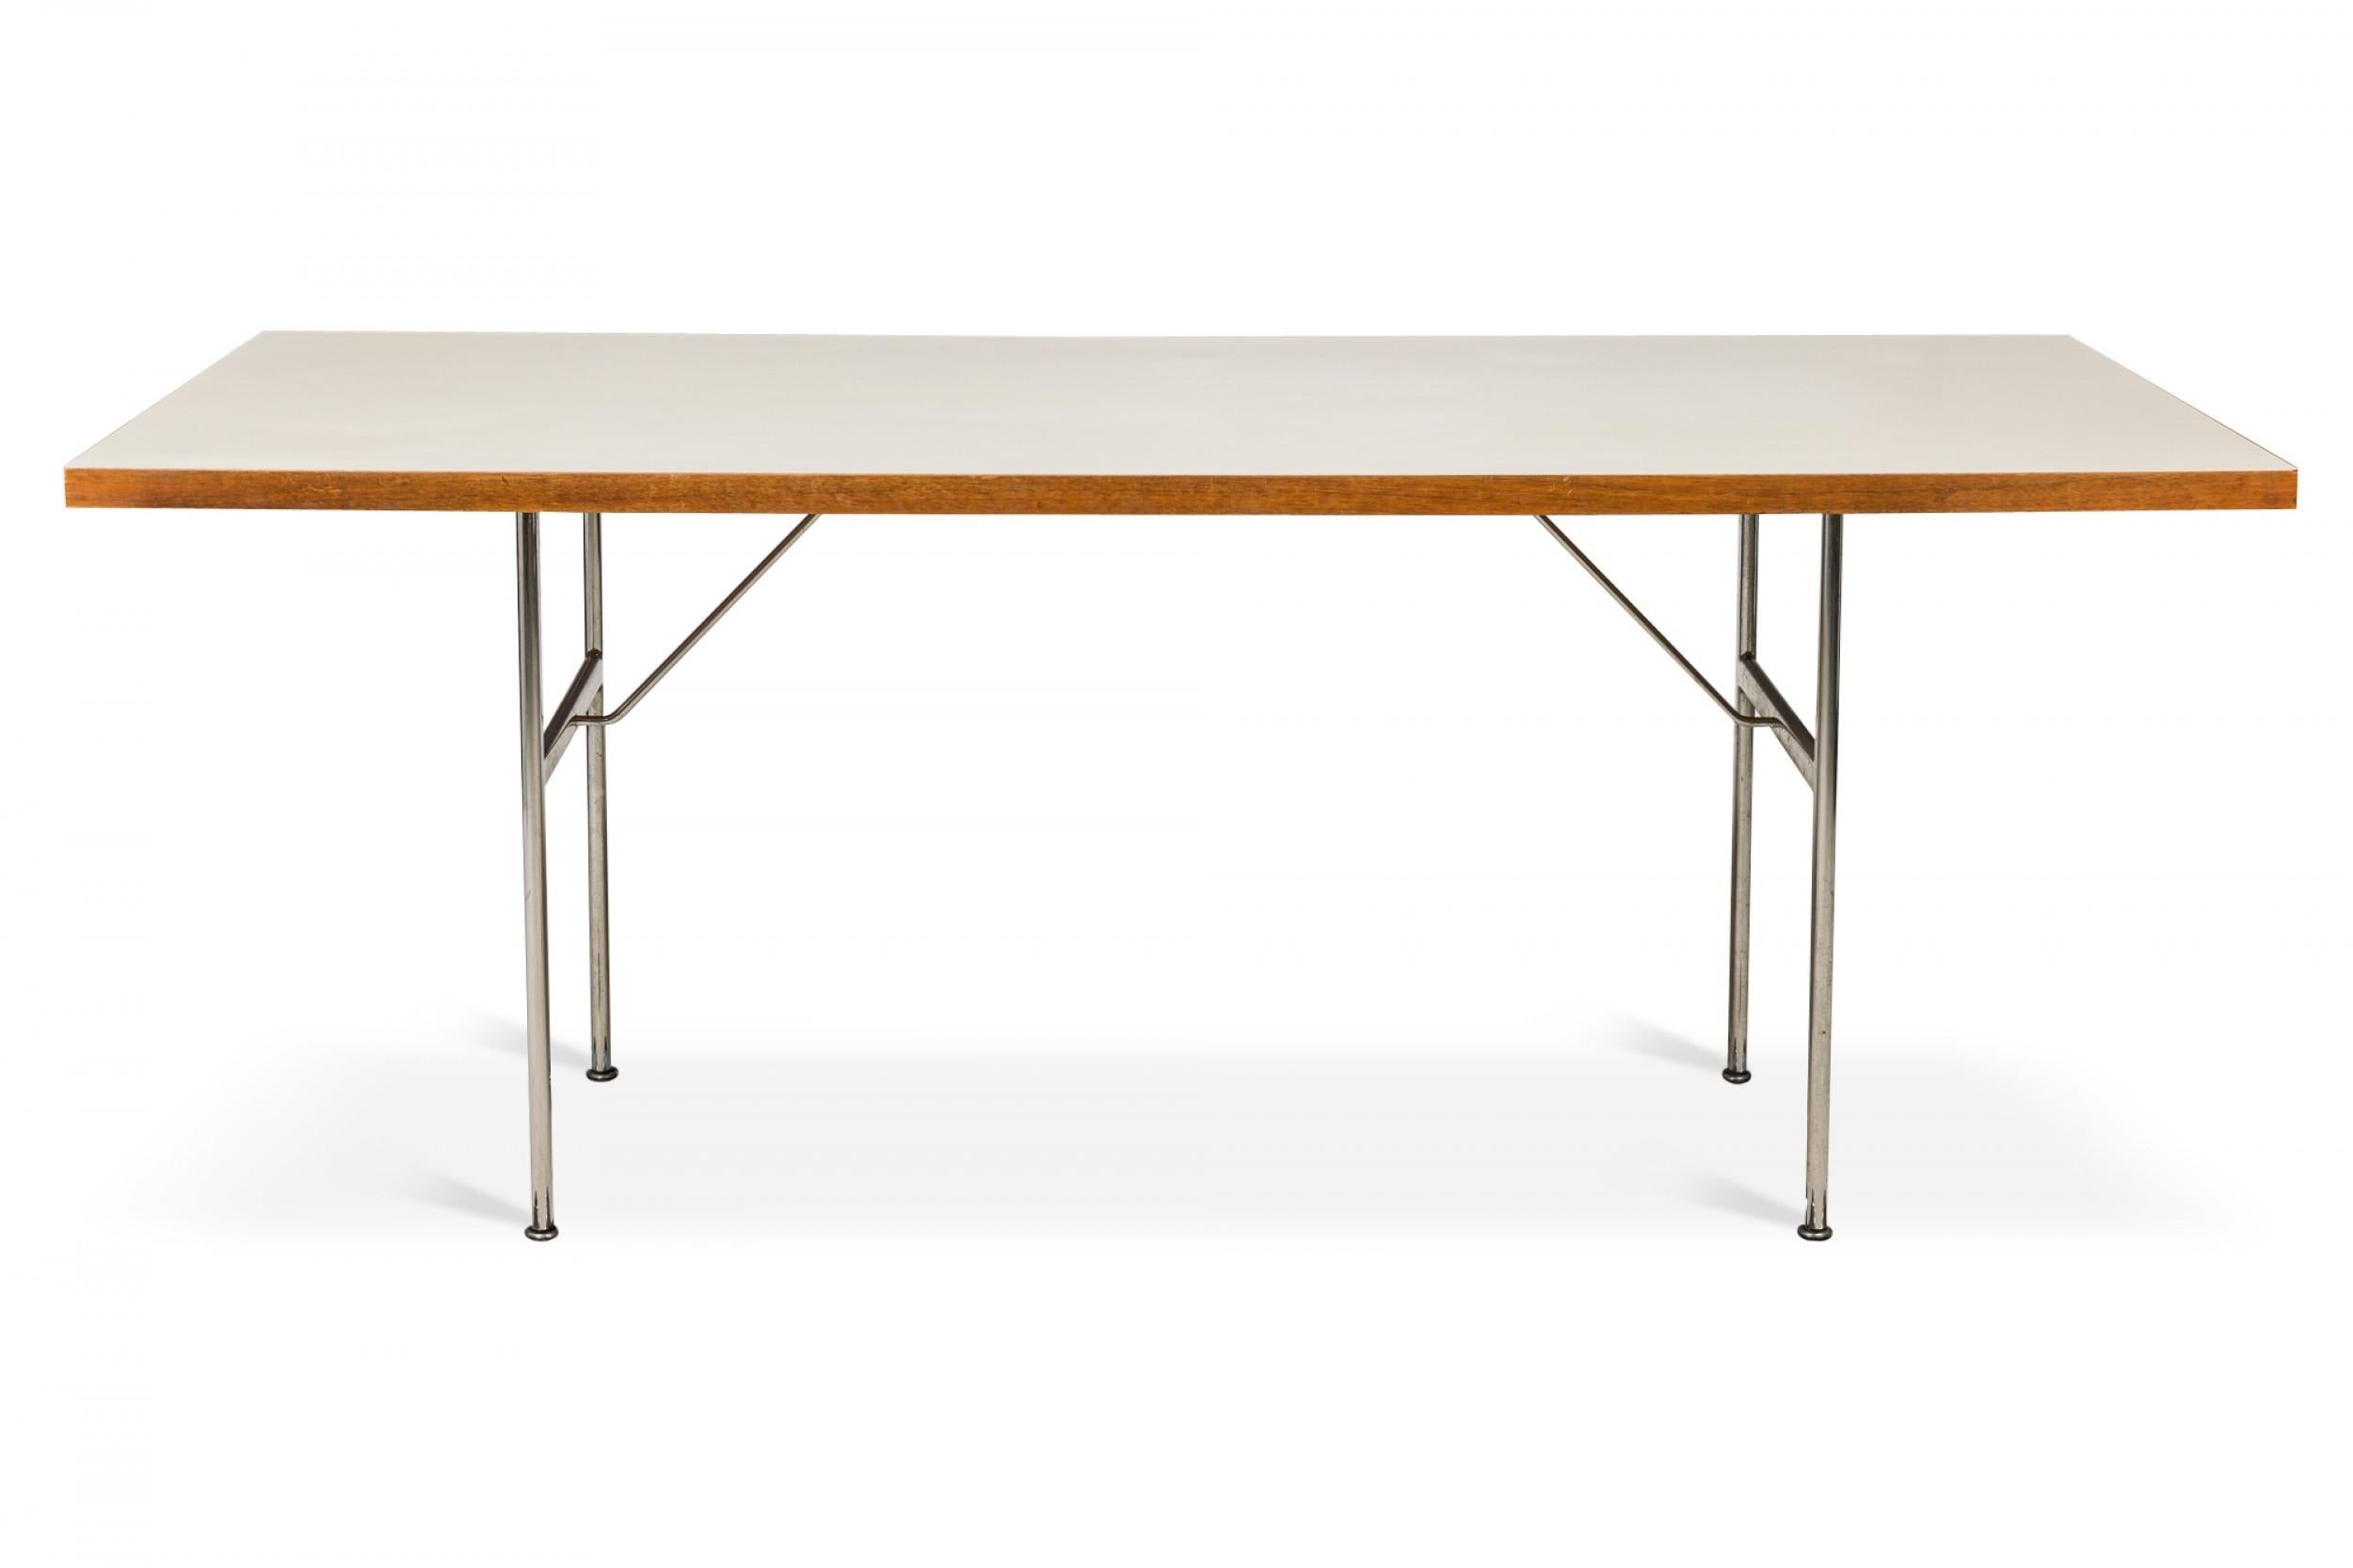 Table de salle à manger américaine du milieu du siècle dernier avec un plateau rectangulaire en stratifié blanc reposant sur deux pieds en acier en forme de H. (GEORGE NELSON / HERMAN MILLER).
 